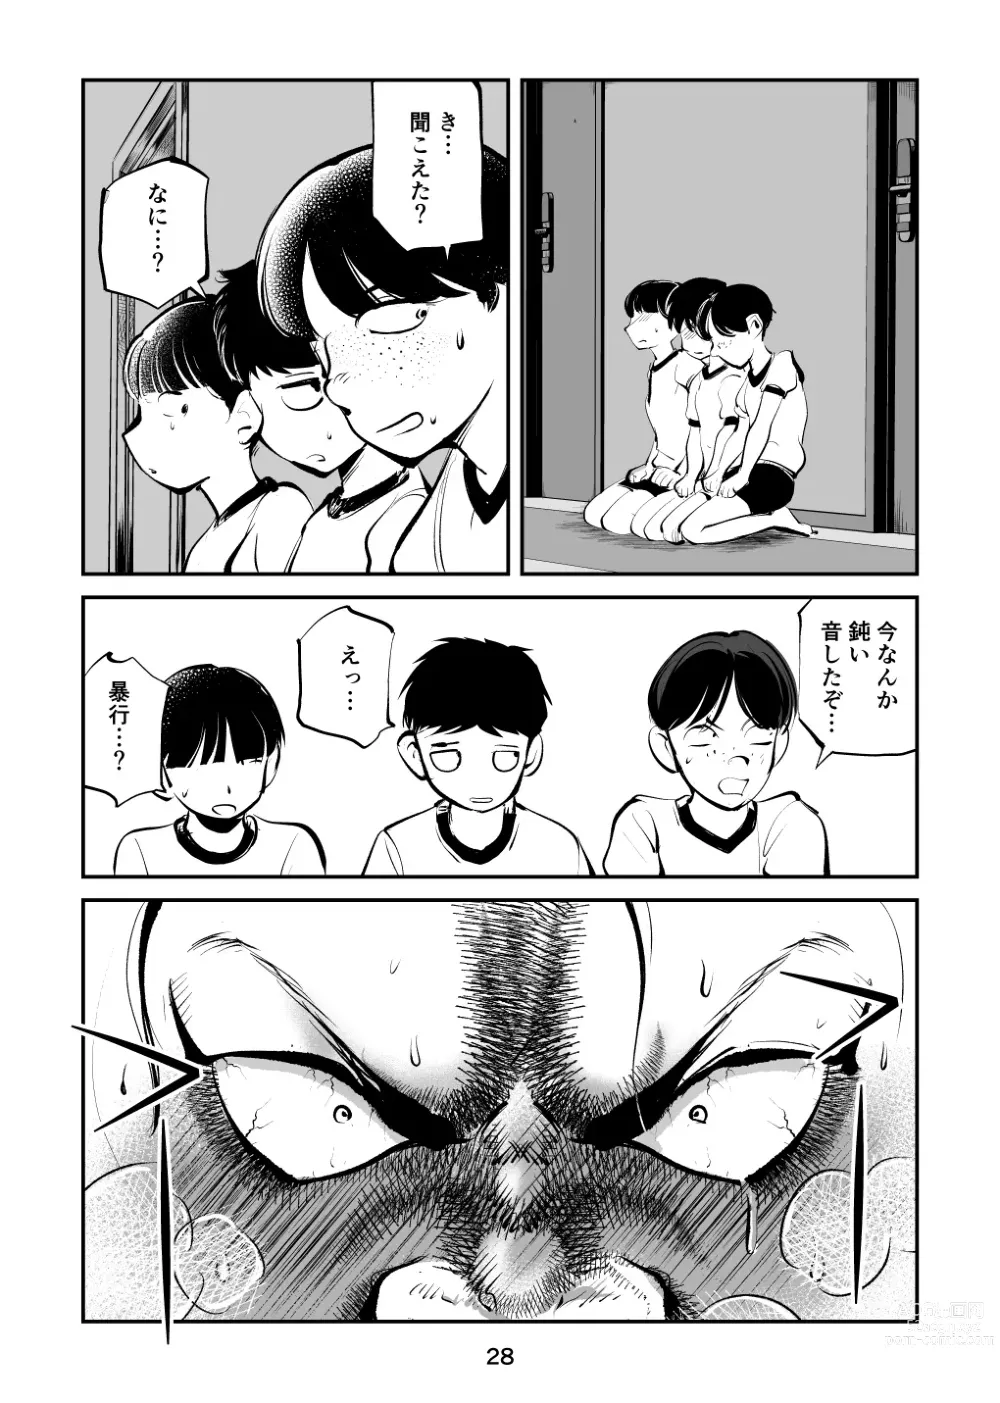 Page 28 of doujinshi Chinpo Shiikukakari 4